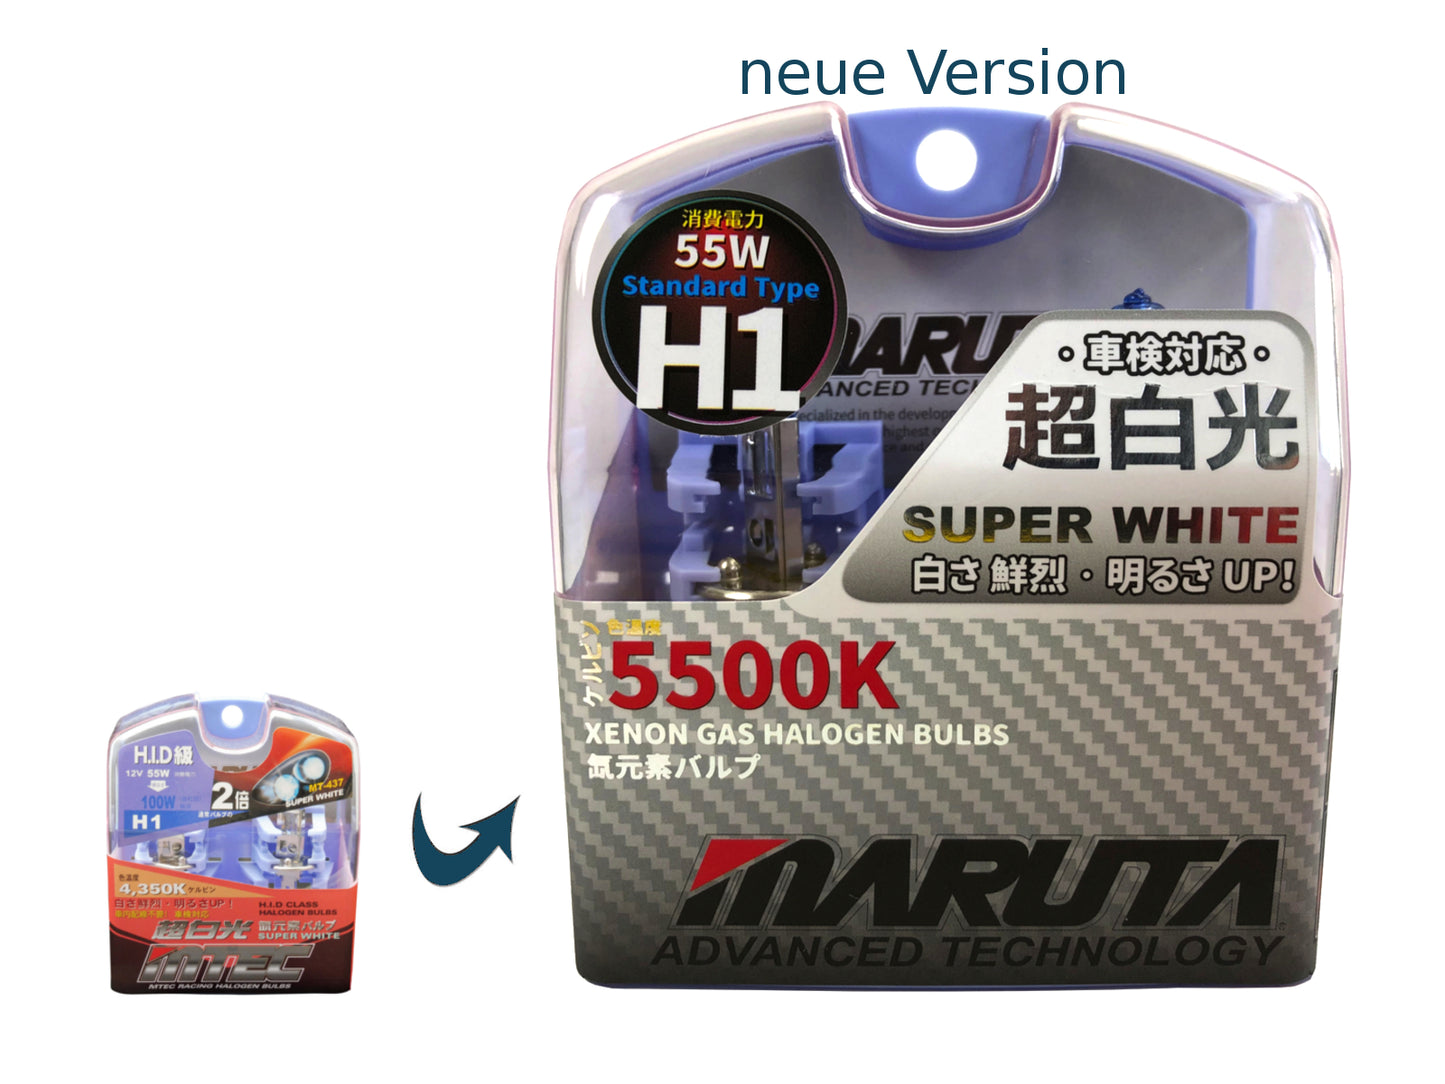 MARUTA SUPER WHITE H1 12V 55W Halogenlampe für Scheinwerfer, Fernlicht, 5500K Xenon-Effekt, langlebige Xenon-Gas Birne mit hochwertigem Quarzglas & Straßenzulassung (ECE Prüfzeichen) - Bild 8